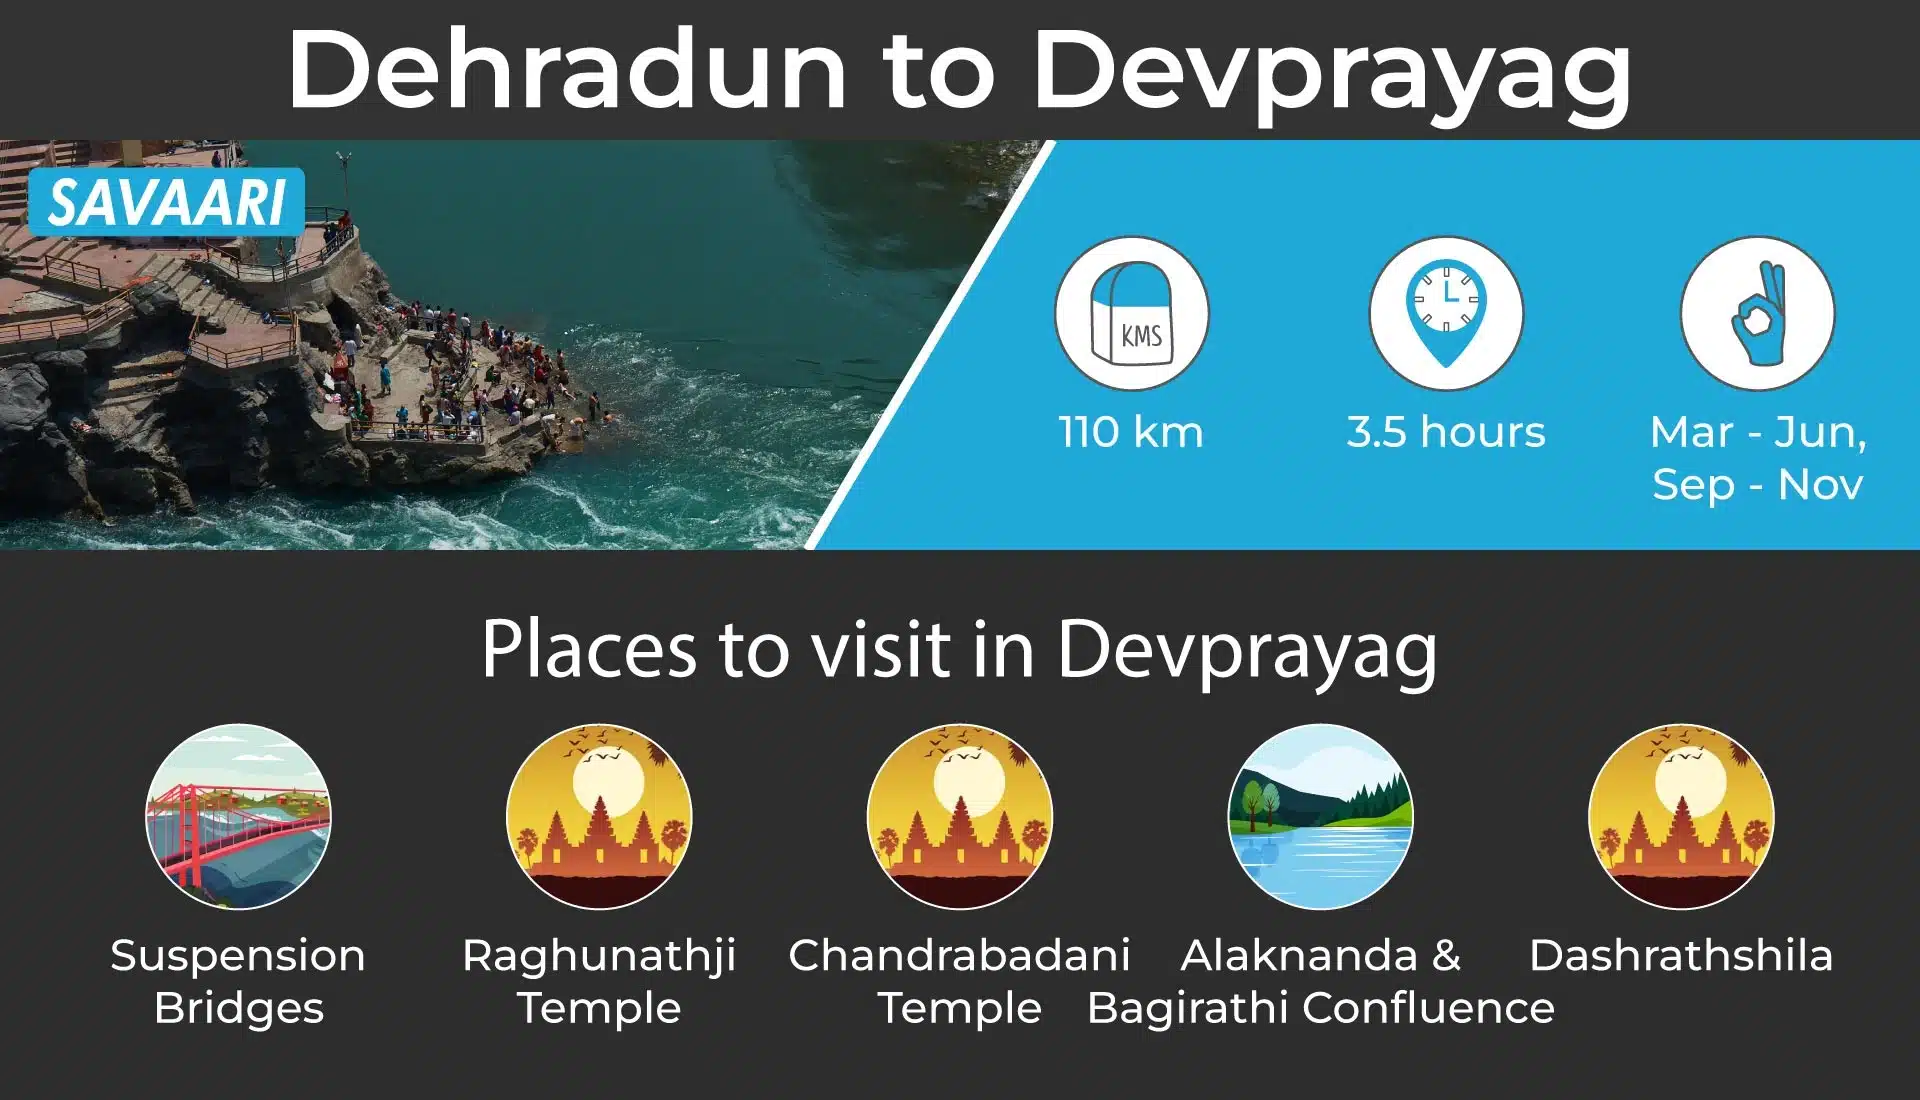 Dehradun to Devprayag